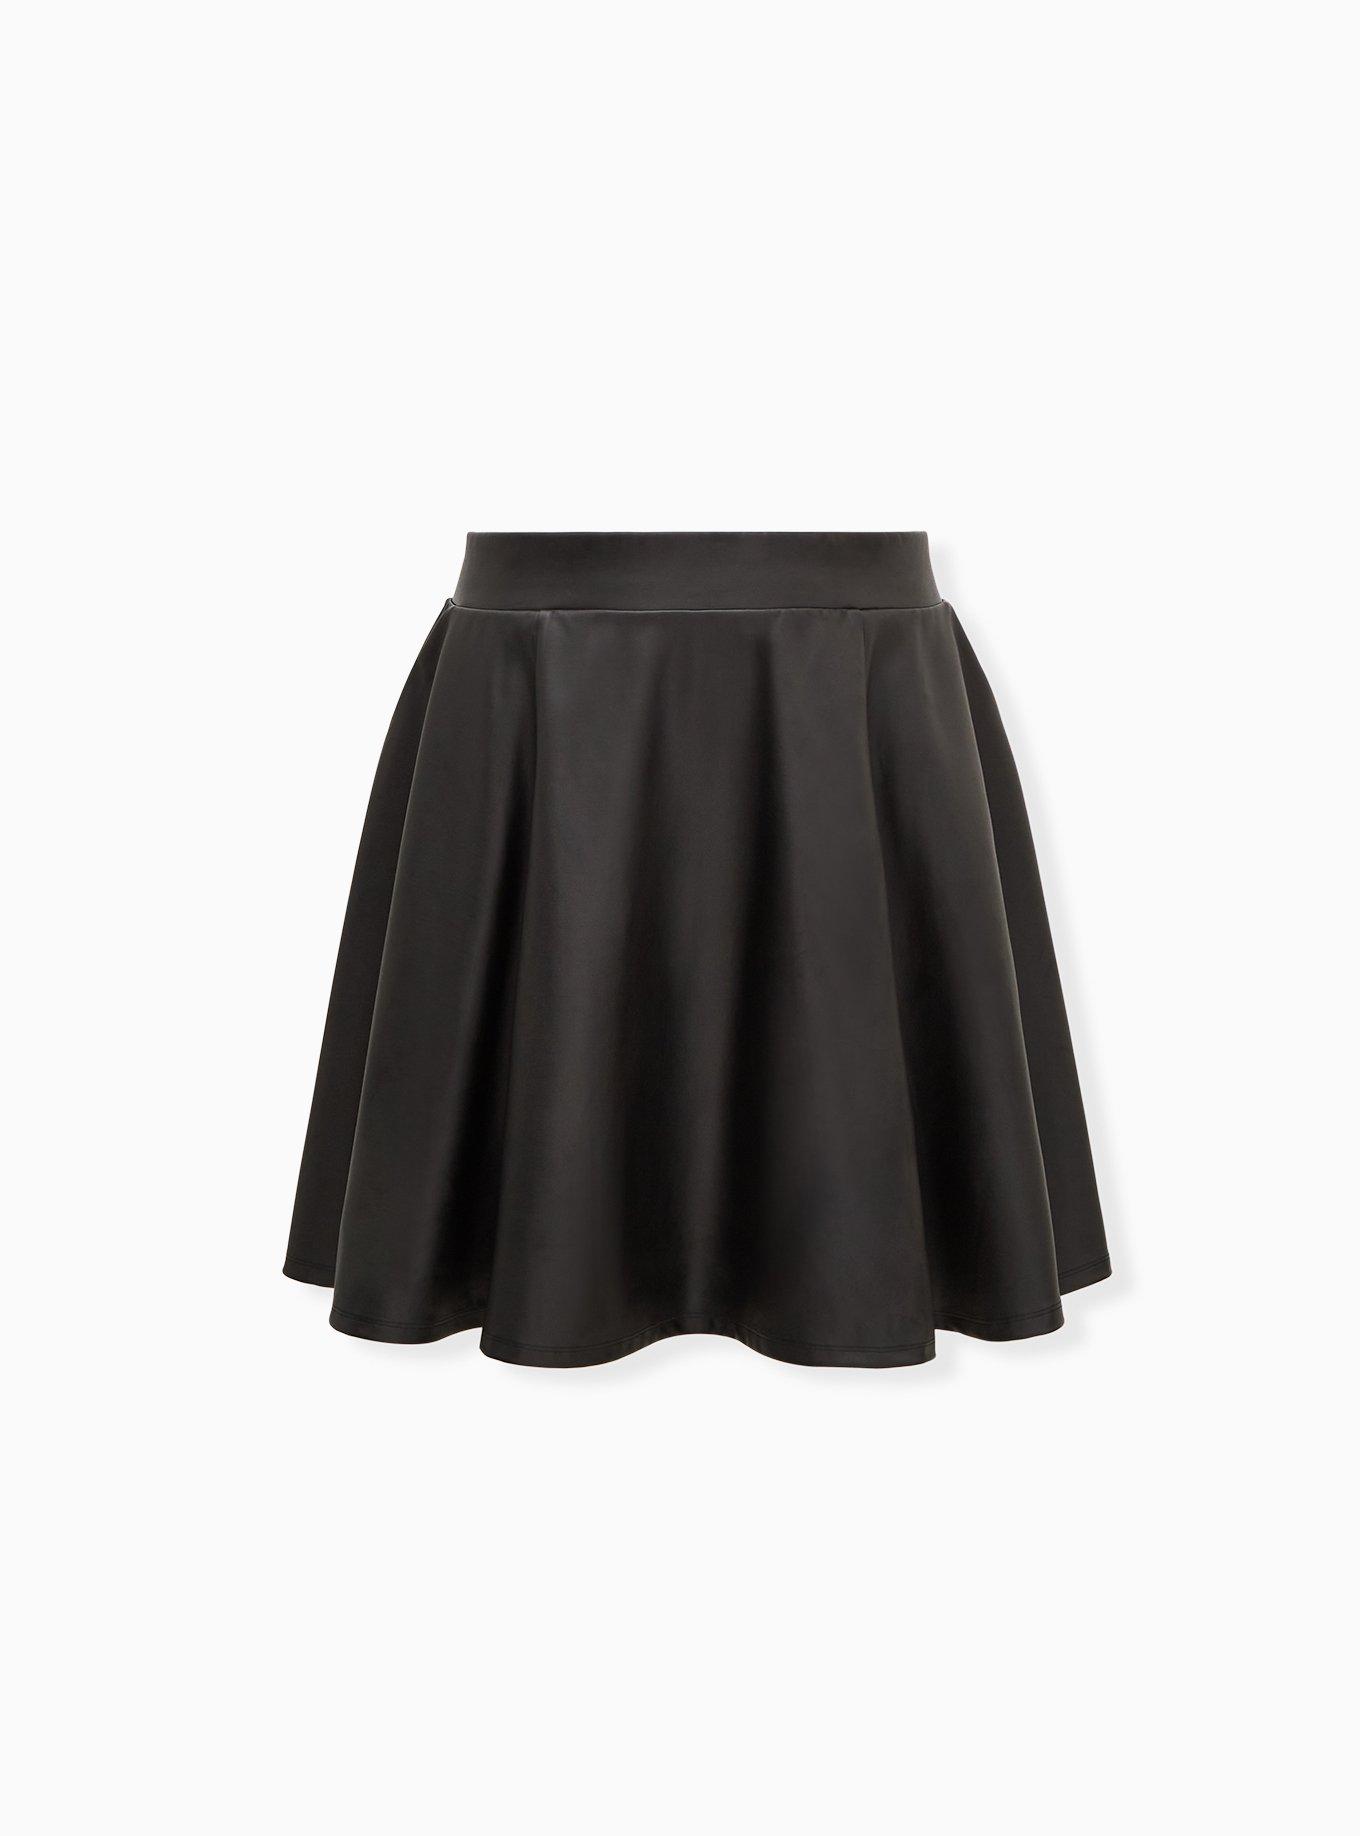 Plus Size - Black Ponte & Faux Leather Pencil Skirt - Torrid